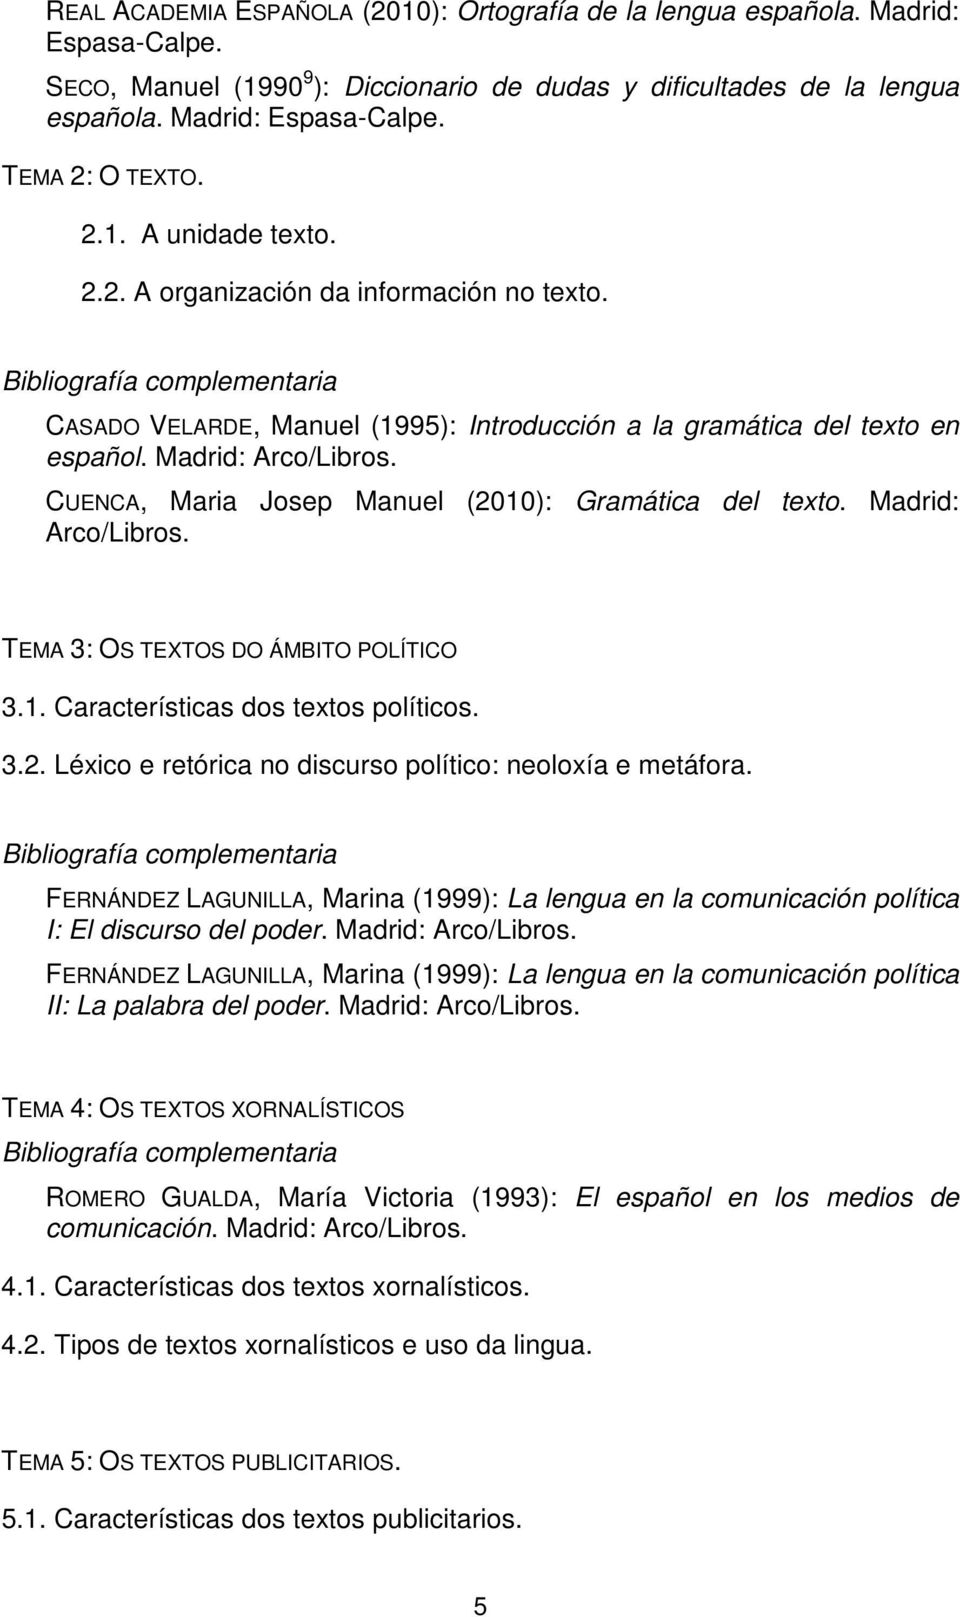 CUENCA, Maria Josep Manuel (2010): Gramática del texto. Madrid: Arco/Libros. TEMA 3: OS TEXTOS DO ÁMBITO POLÍTICO 3.1. Características dos textos políticos. 3.2. Léxico e retórica no discurso político: neoloxía e metáfora.